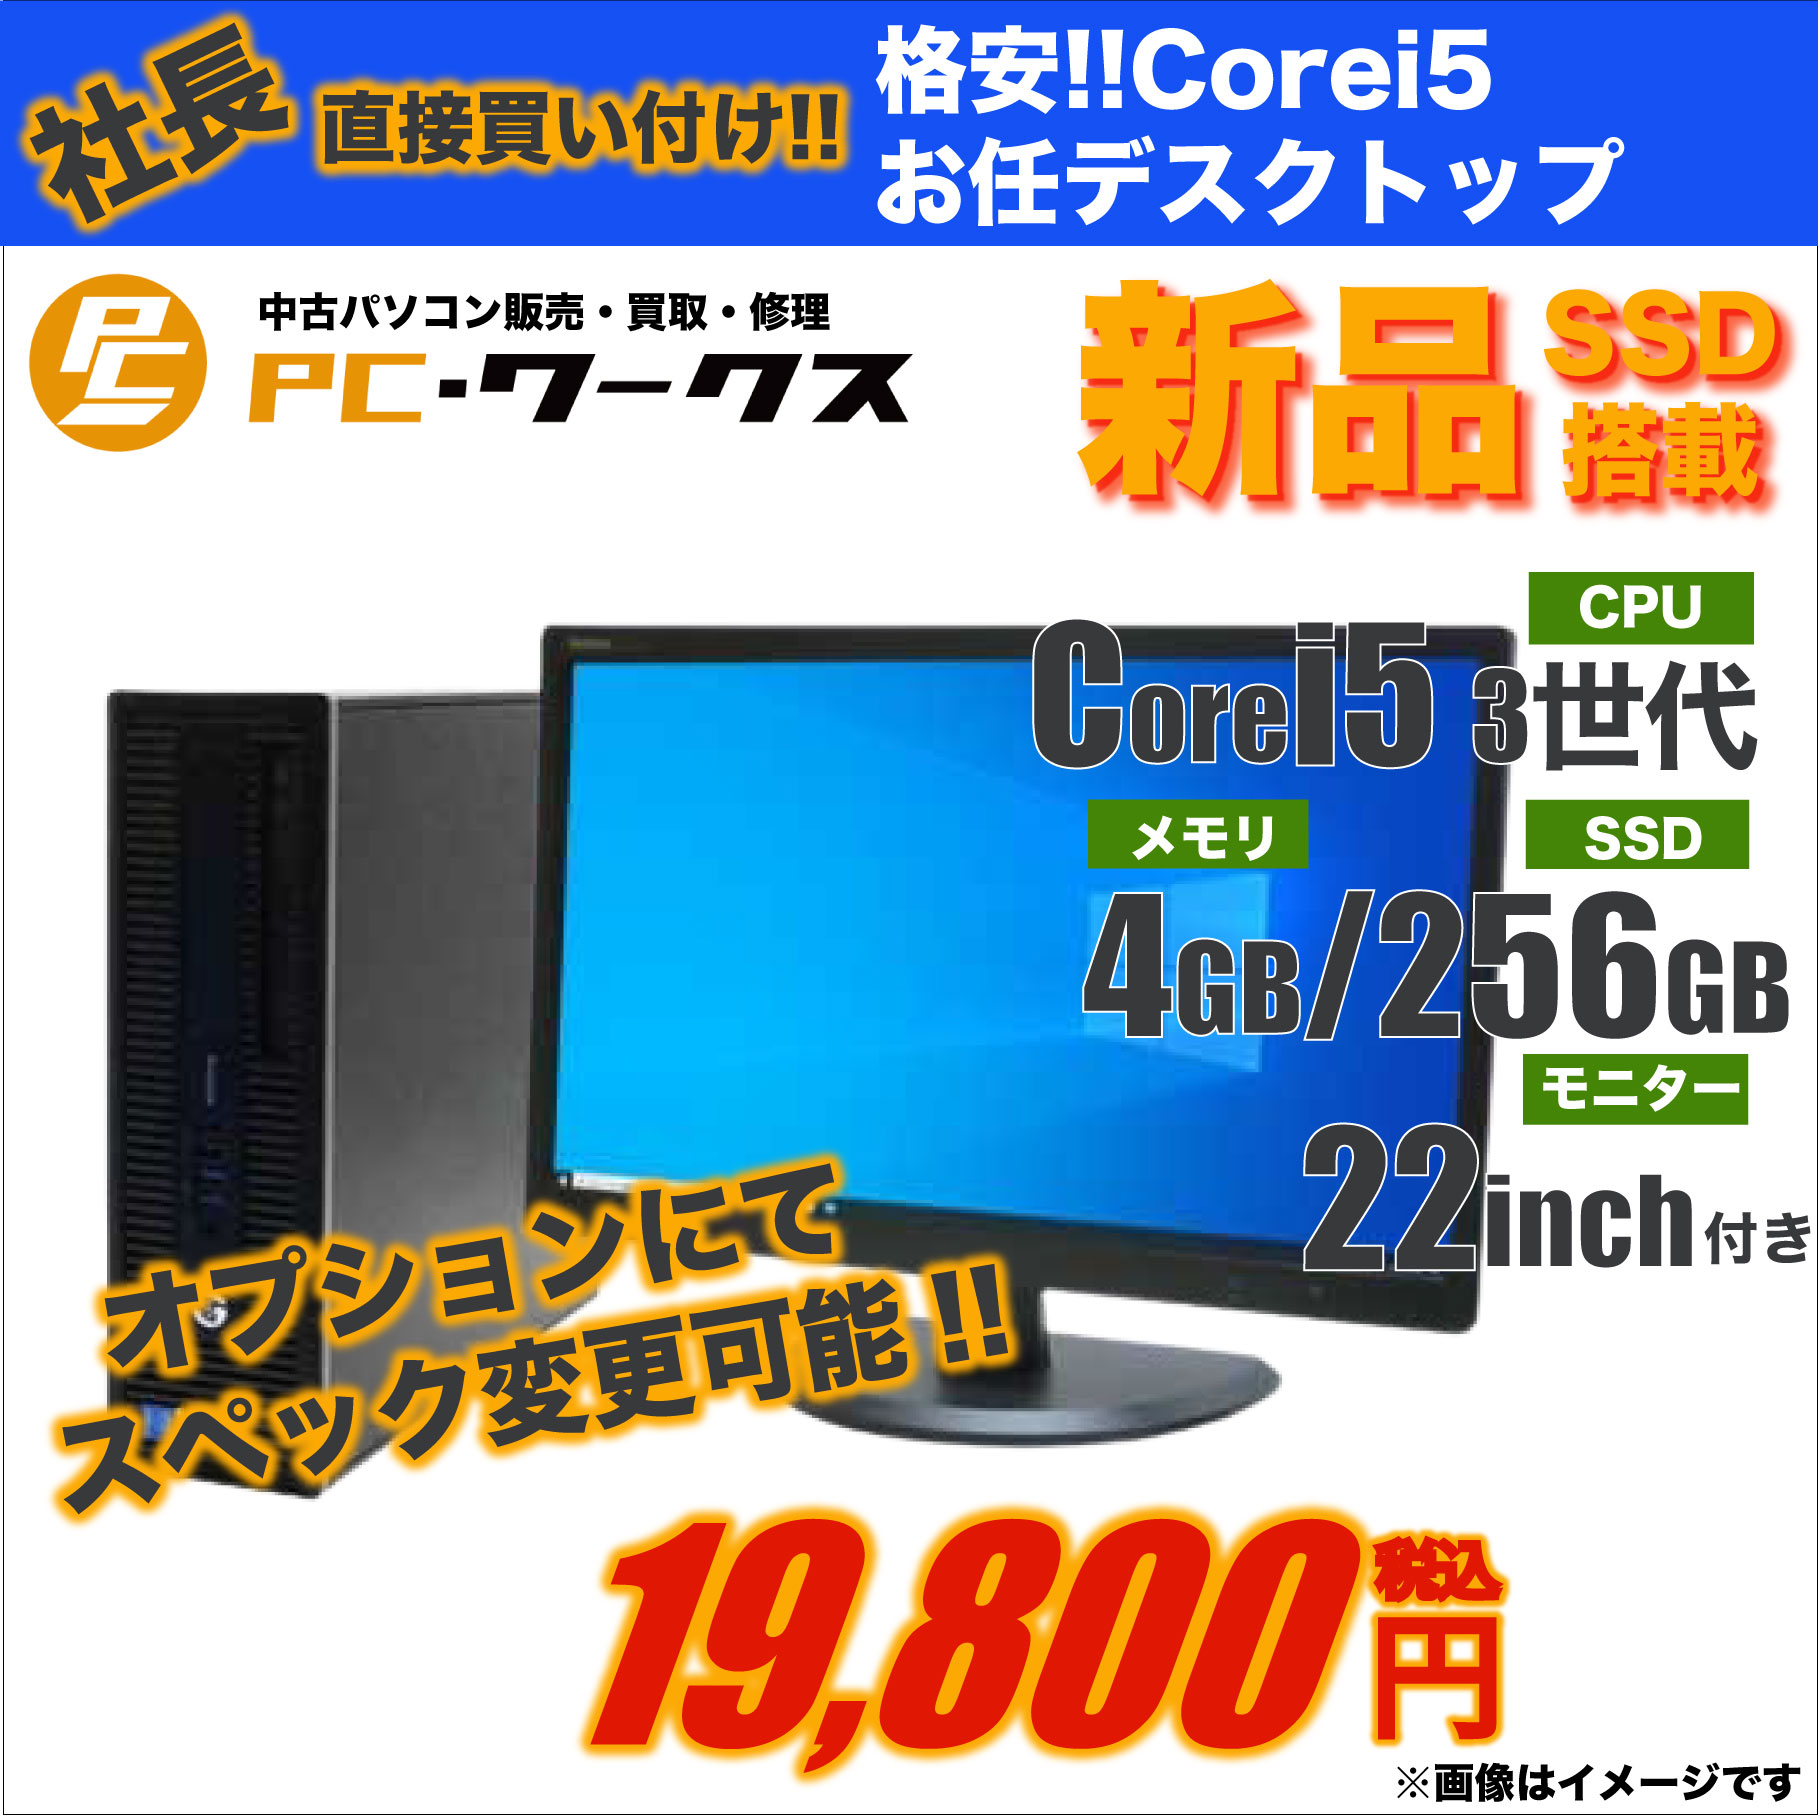 格安!!Corei5お任せデスクトップパソコン/22inchモニター